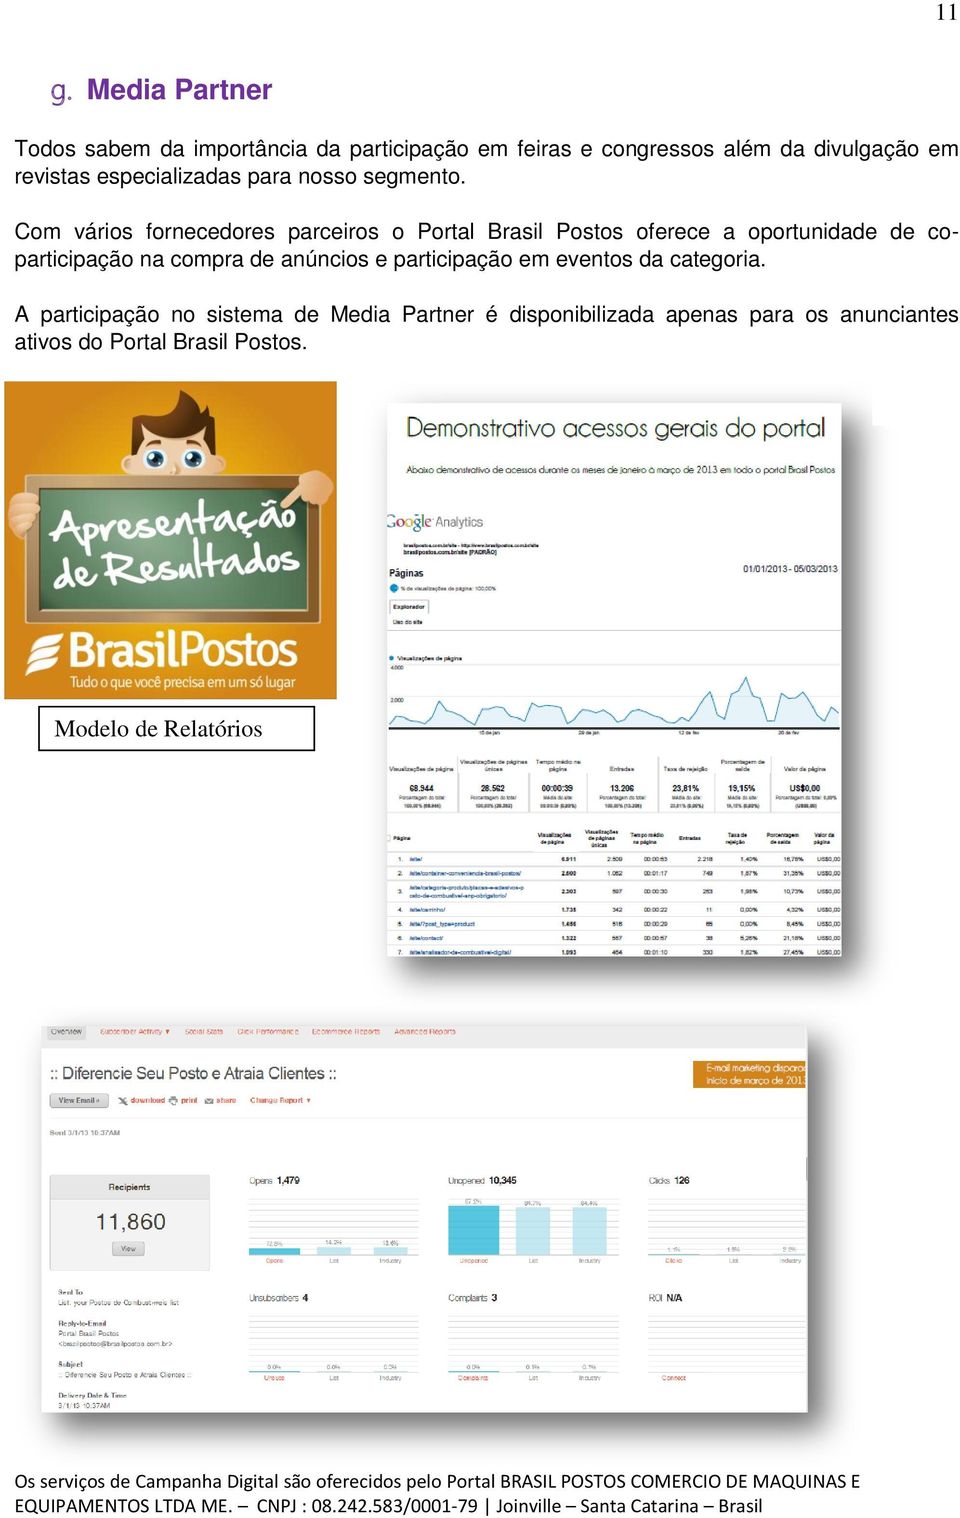 Com vários fornecedores parceiros o Portal Brasil Postos oferece a oportunidade de coparticipação na compra de